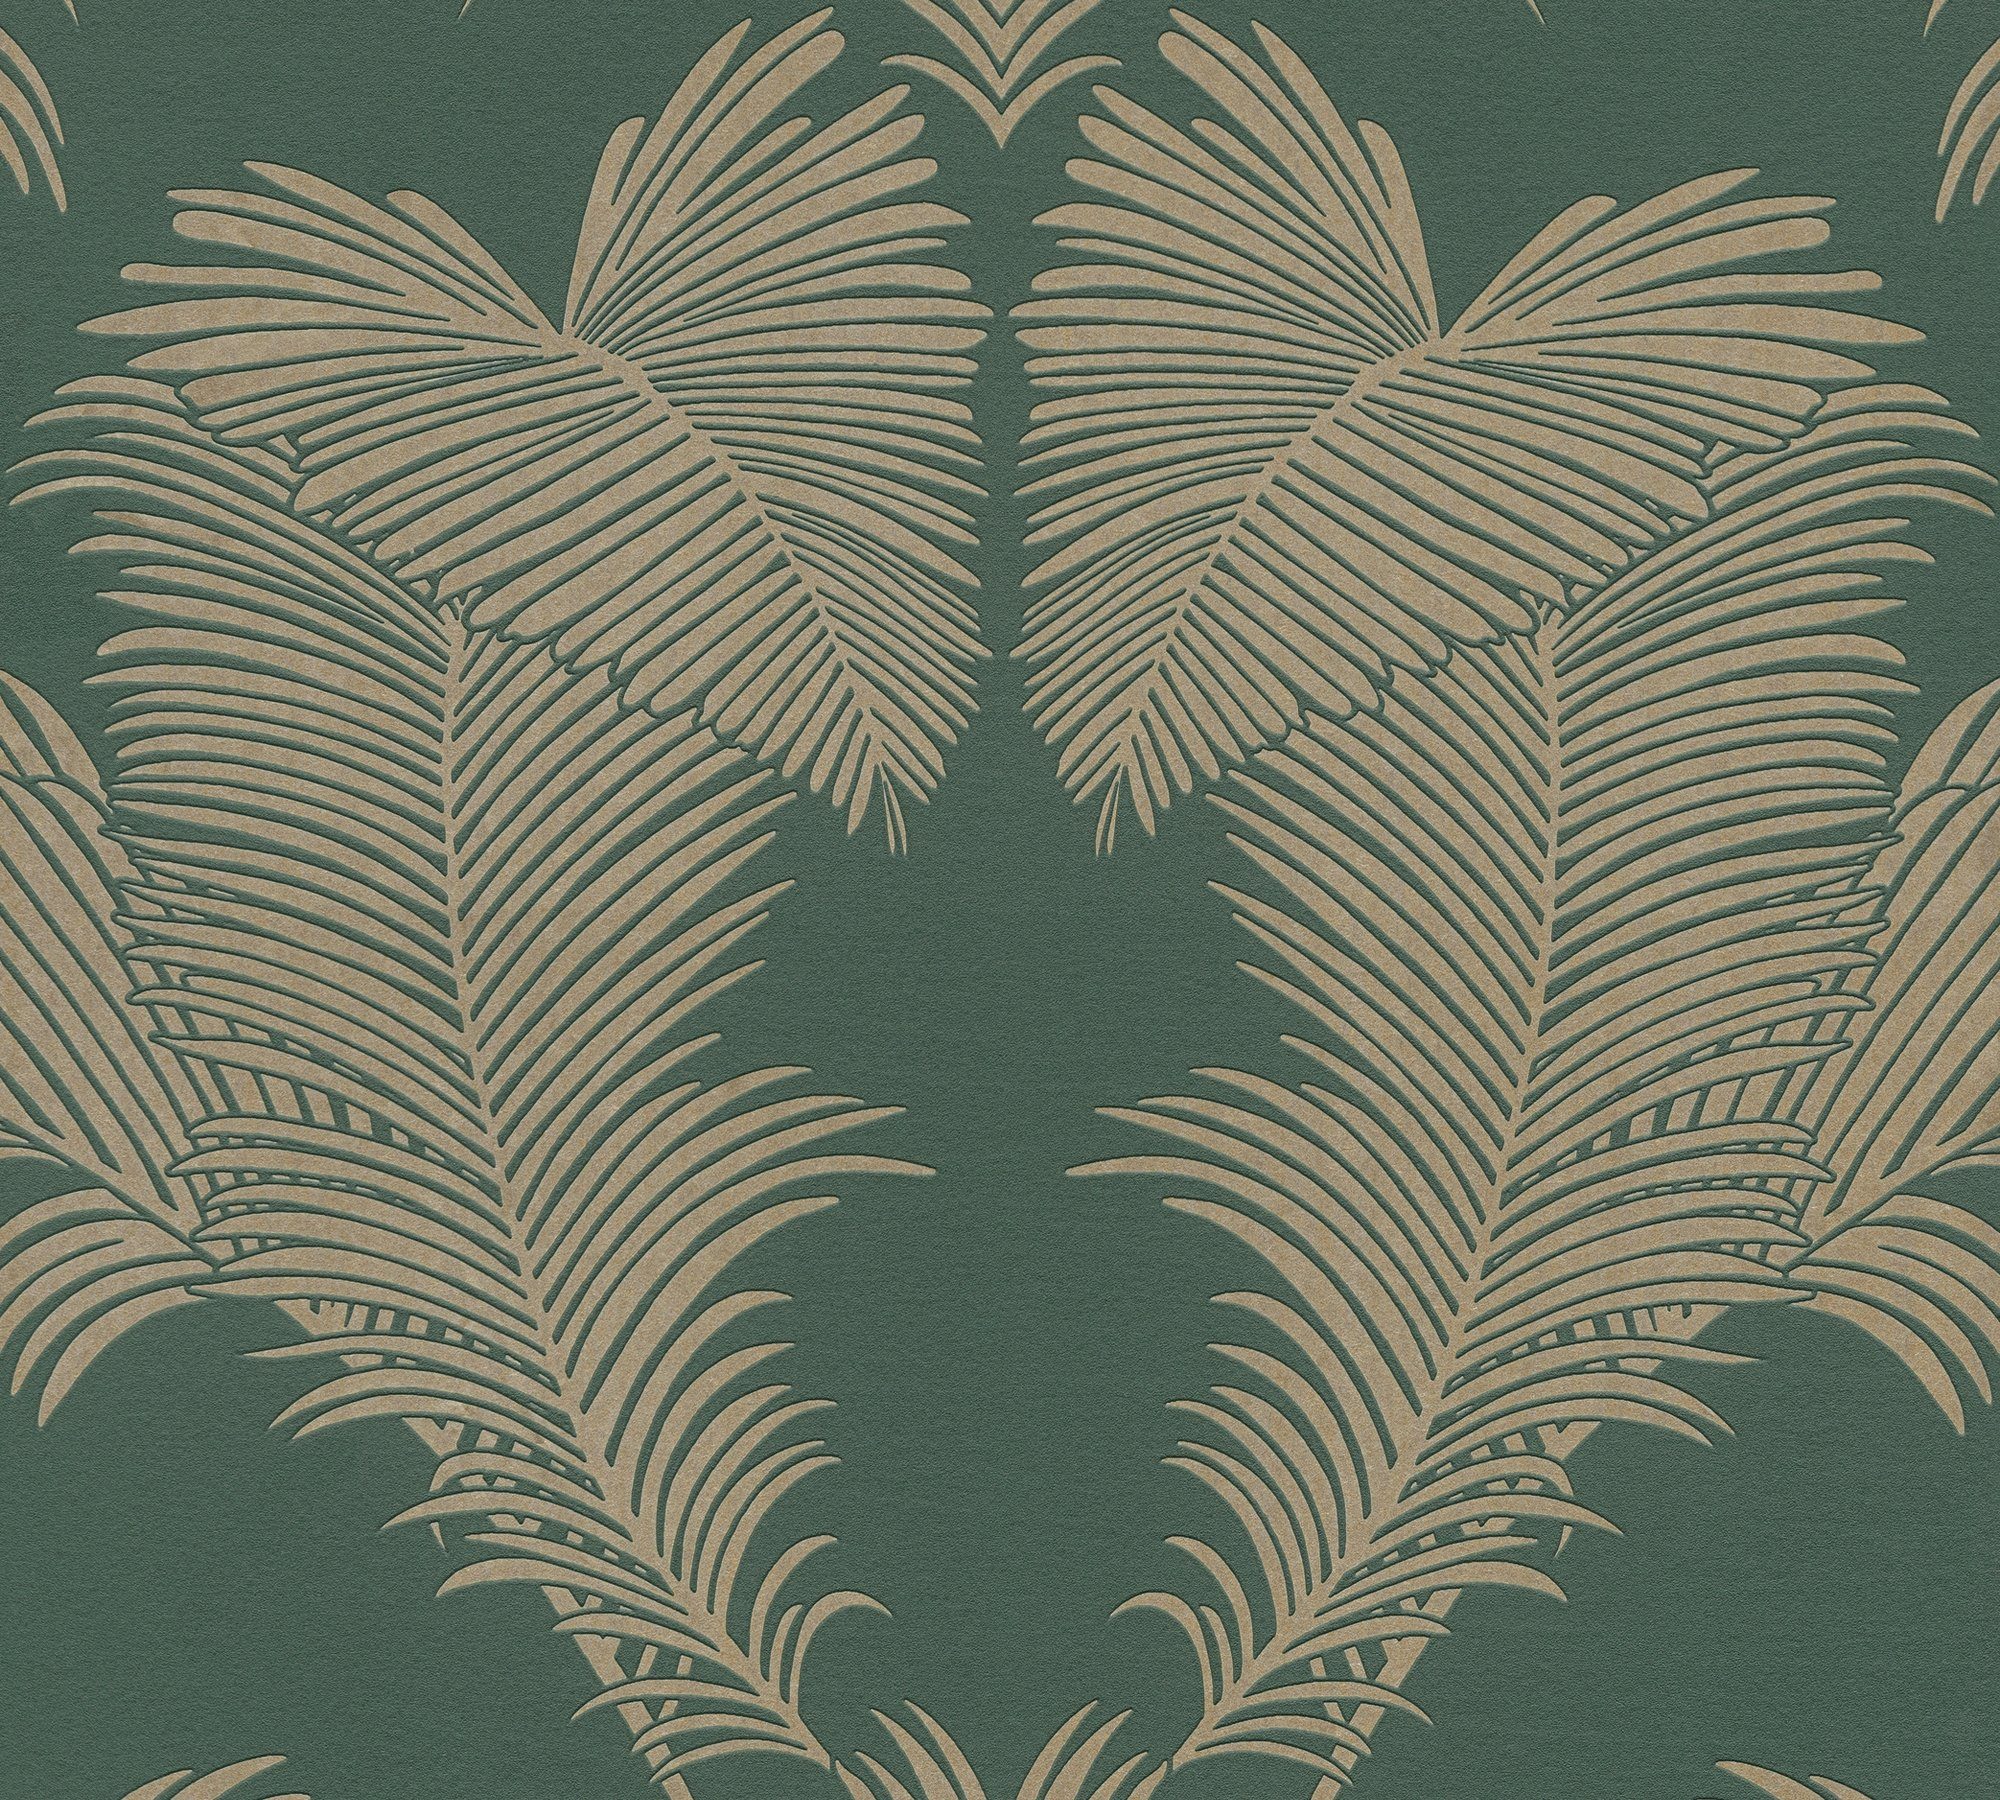 Vliestapete botanisch, Glänzend A.S. Palmen tropisch, Tapete Dschungeltapete Trendwall, Création grün/metallic floral,